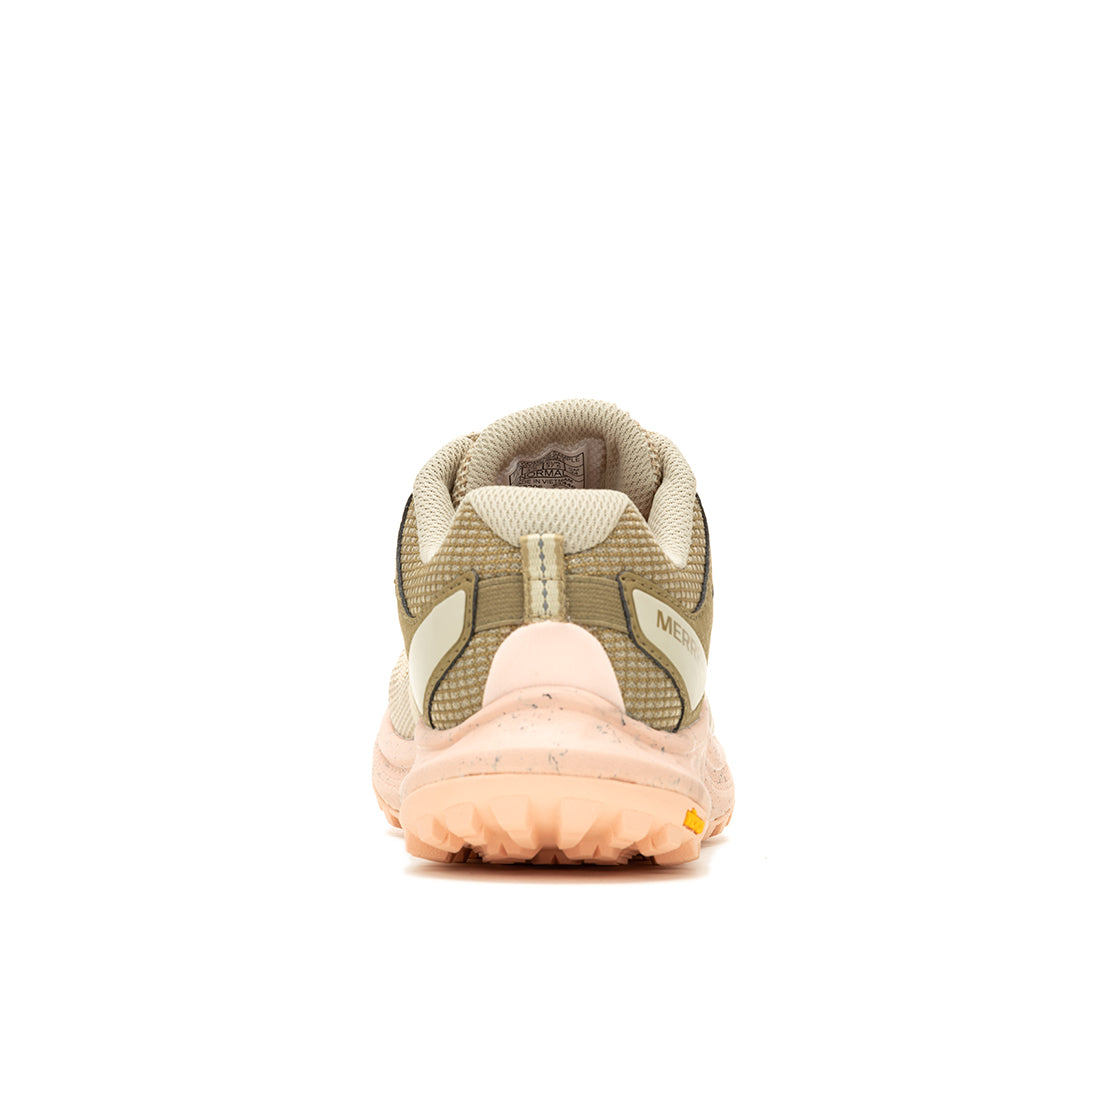 Antora 3 – Cream/Peach Womens Trail Running Shoes